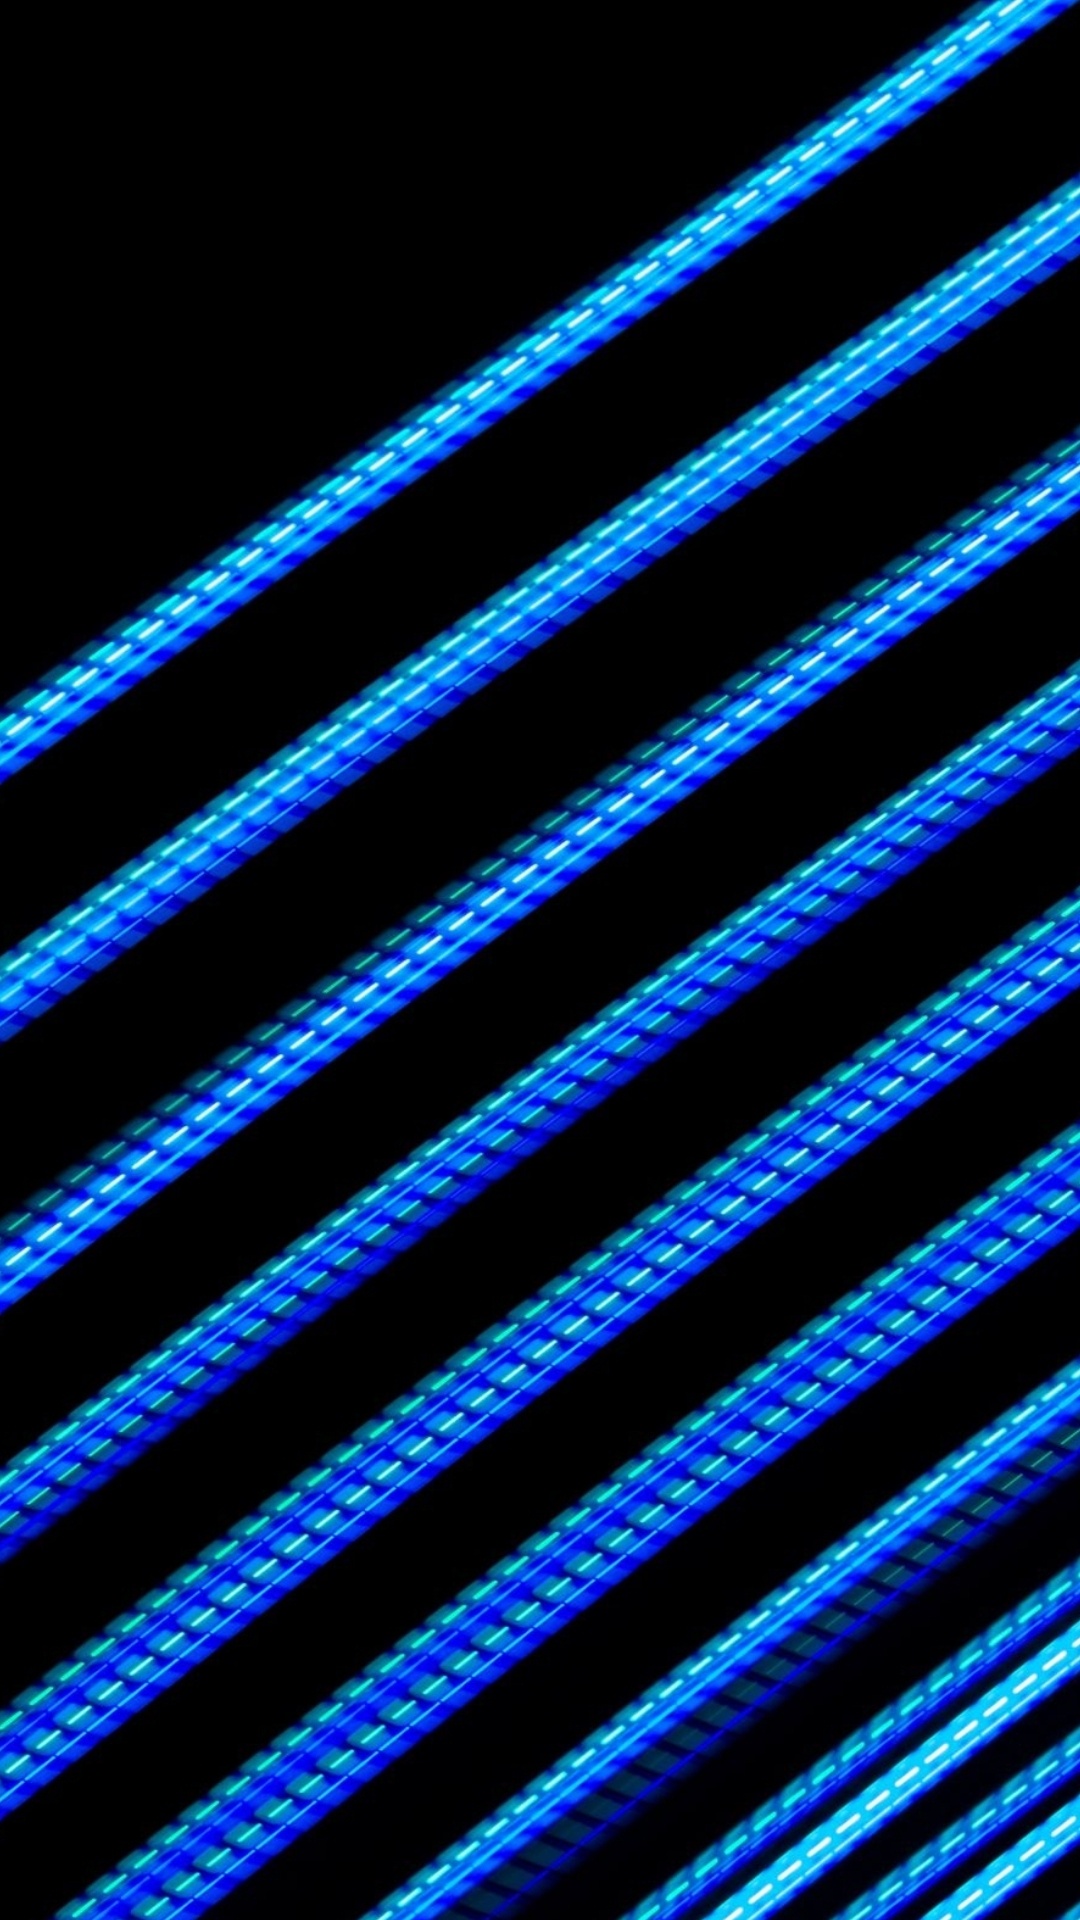 Licht, Nokia 5800 Xpressmusic, Smartphone, Azure, Blau. Wallpaper in 1080x1920 Resolution